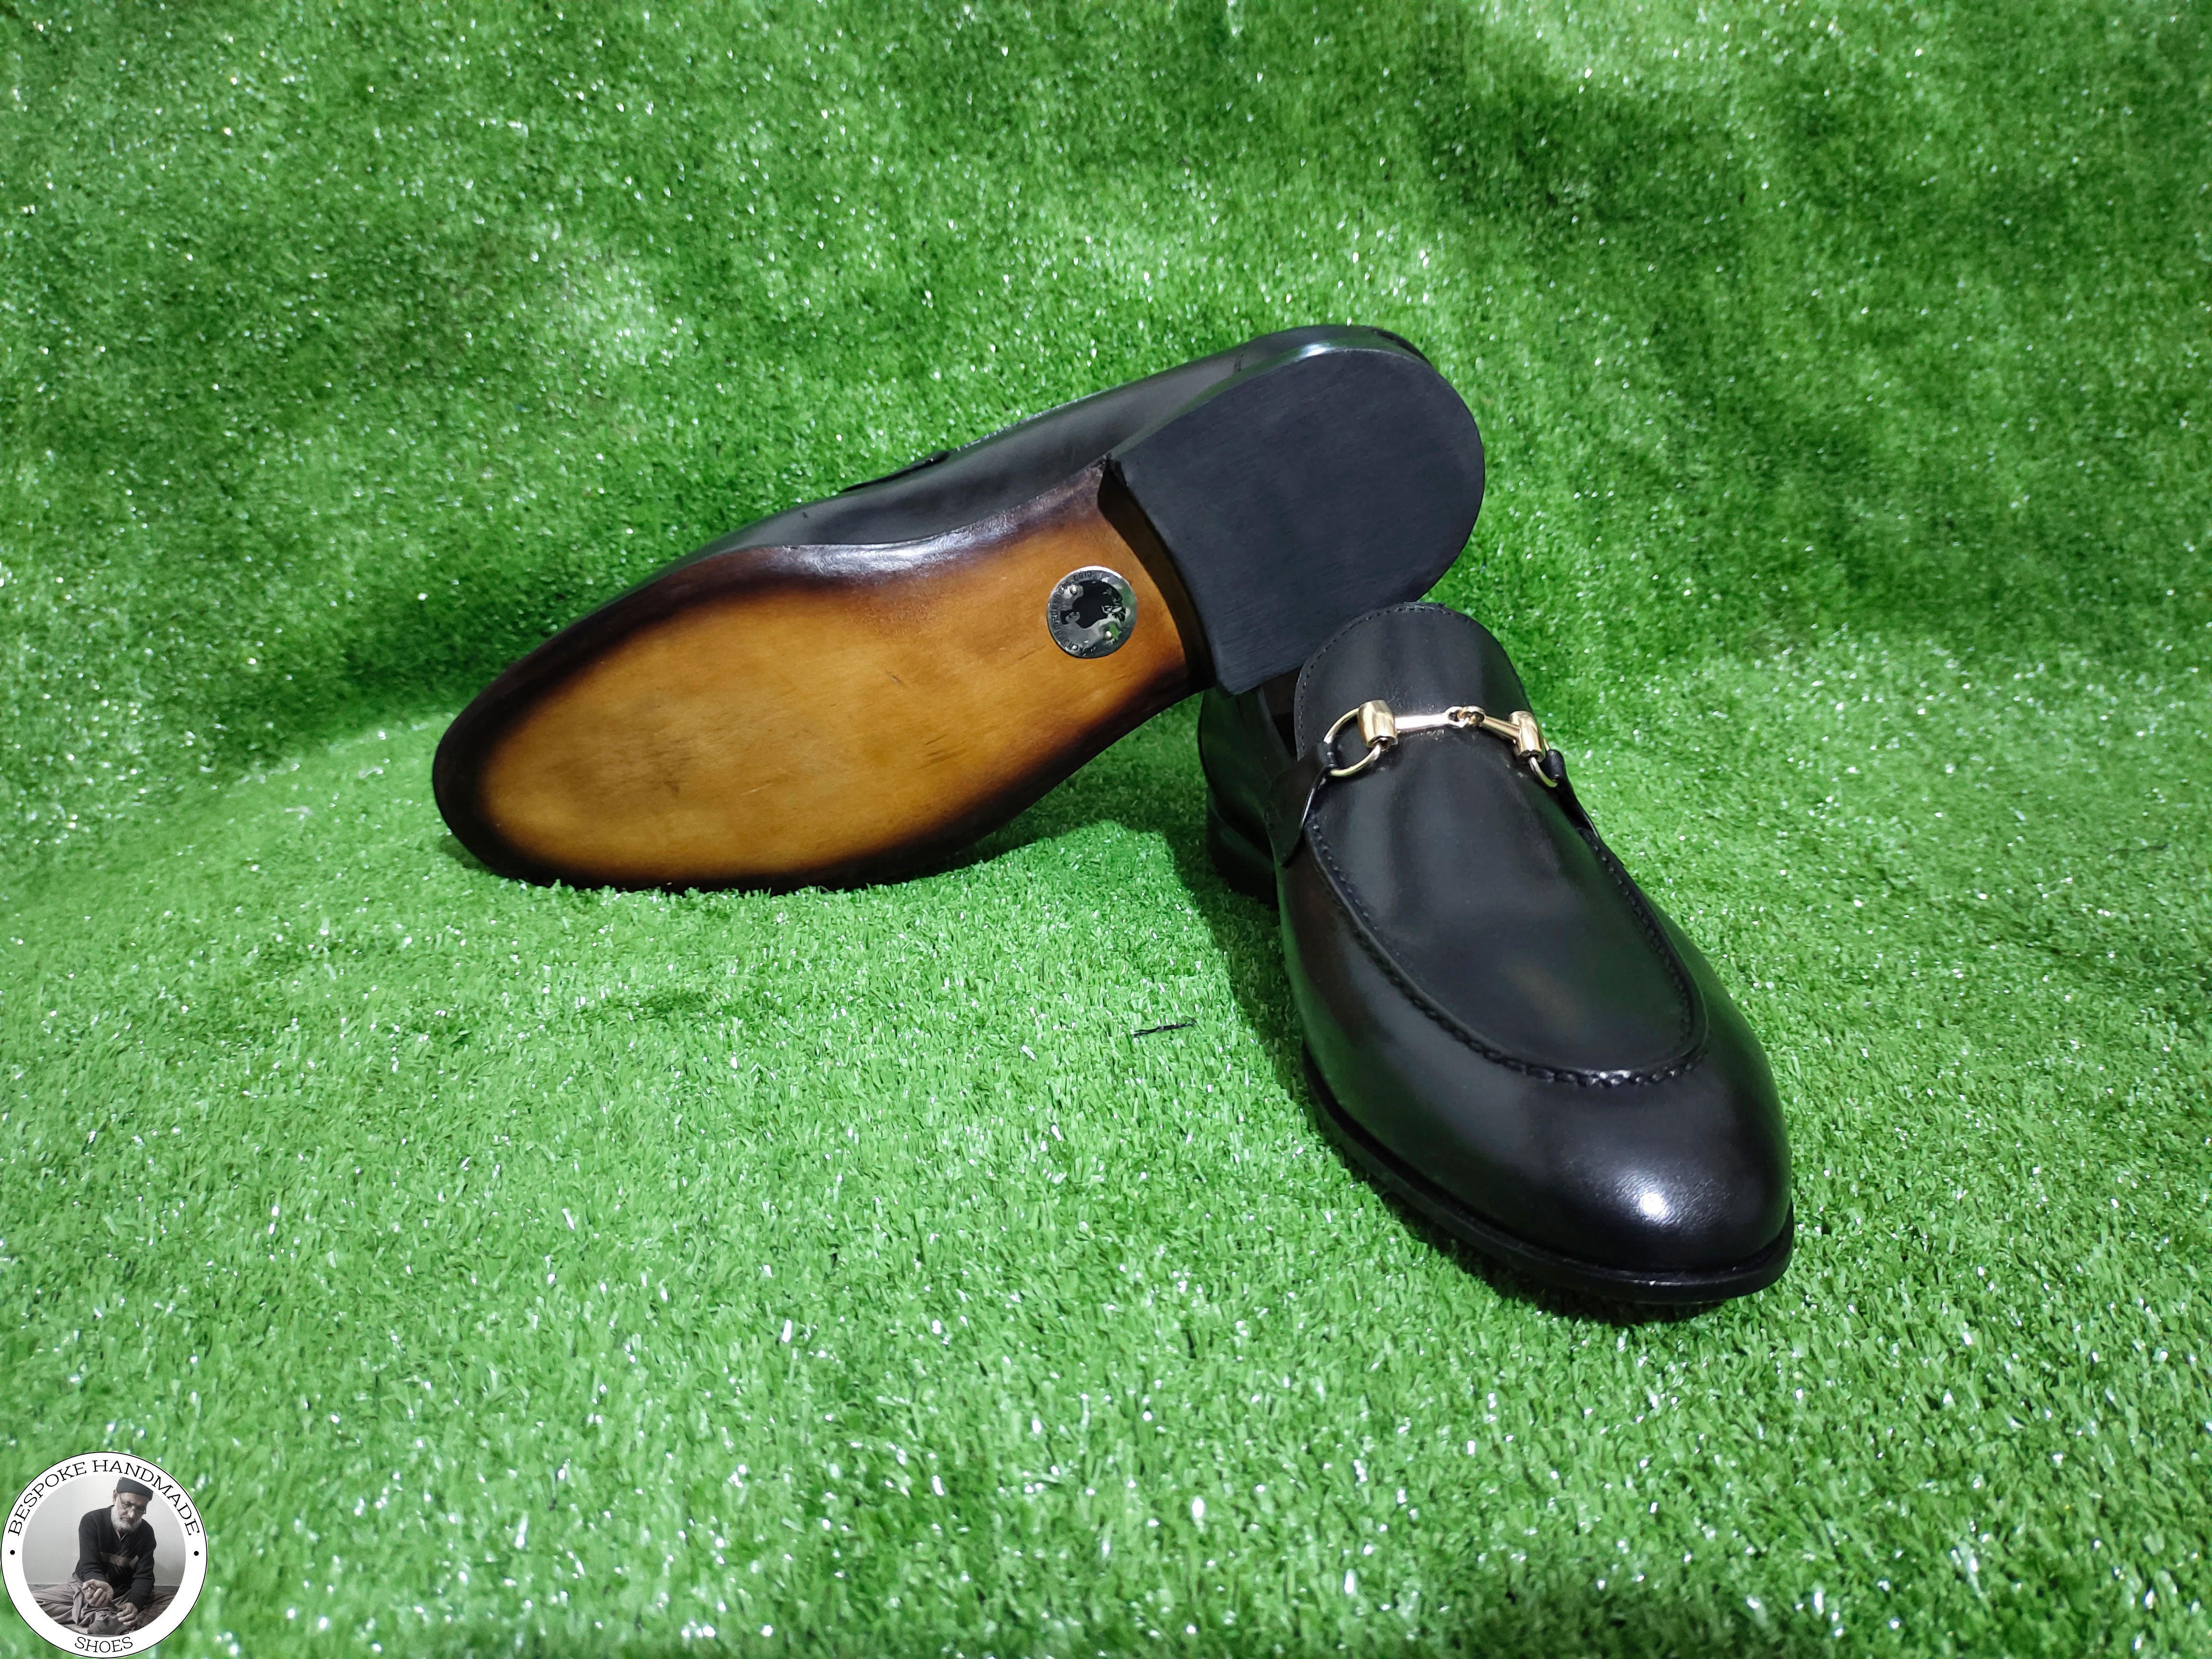 Bespoke Handmade Business Shoe, Black Leather Buckle Loafer Slip on Moccasin Men's Shoes